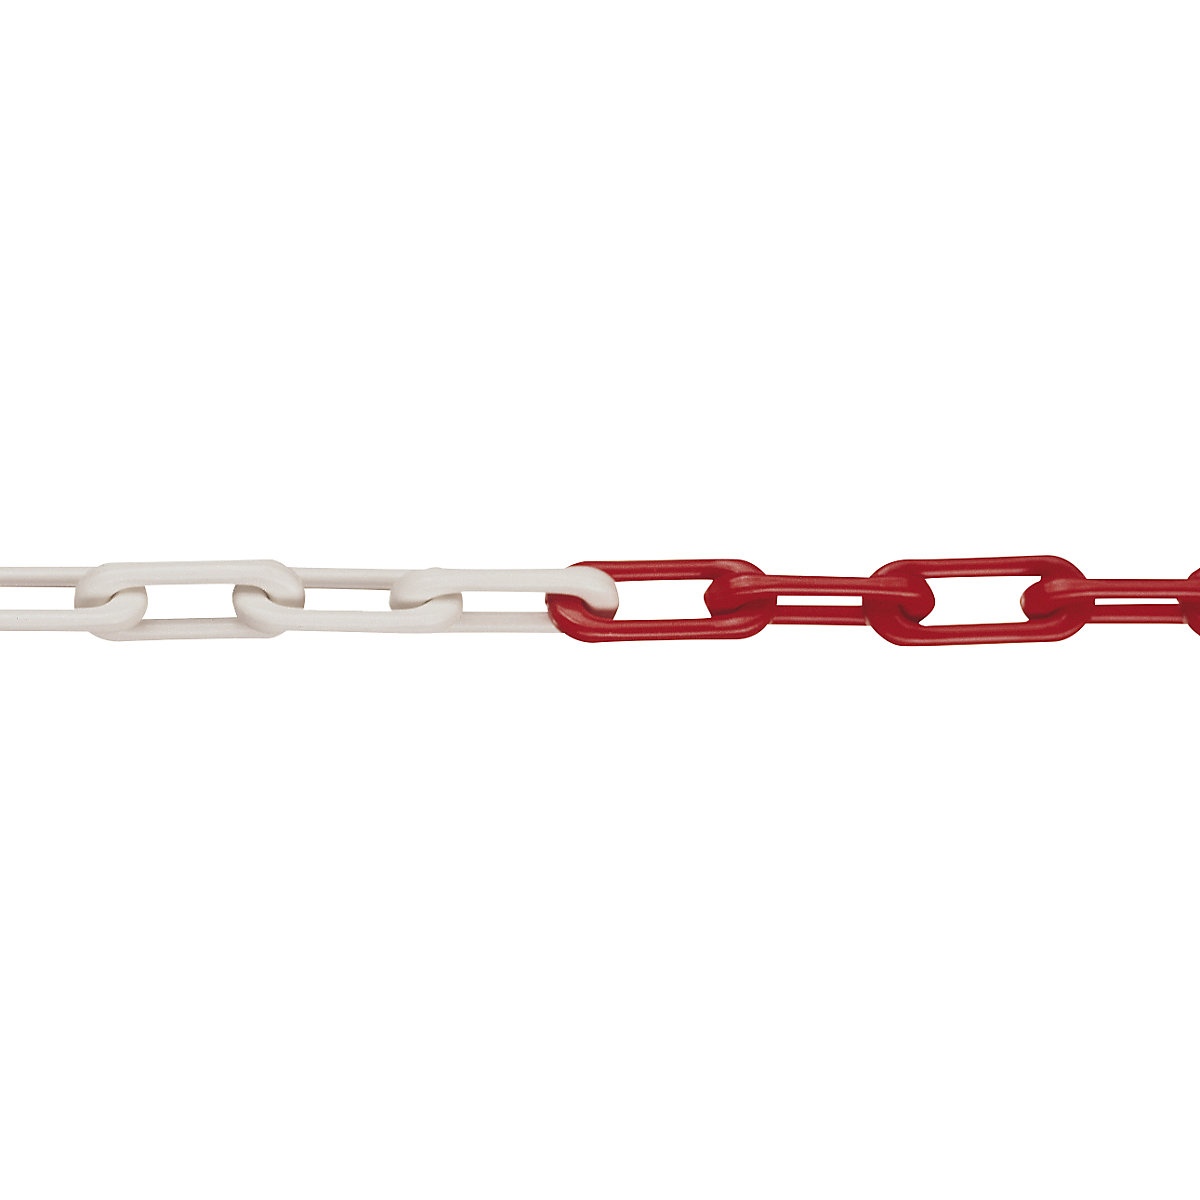 Nylon-kwaliteitsketting, MNK-kwaliteit 6, lengte 50 m, rood-wit, vanaf 4 stuks-4